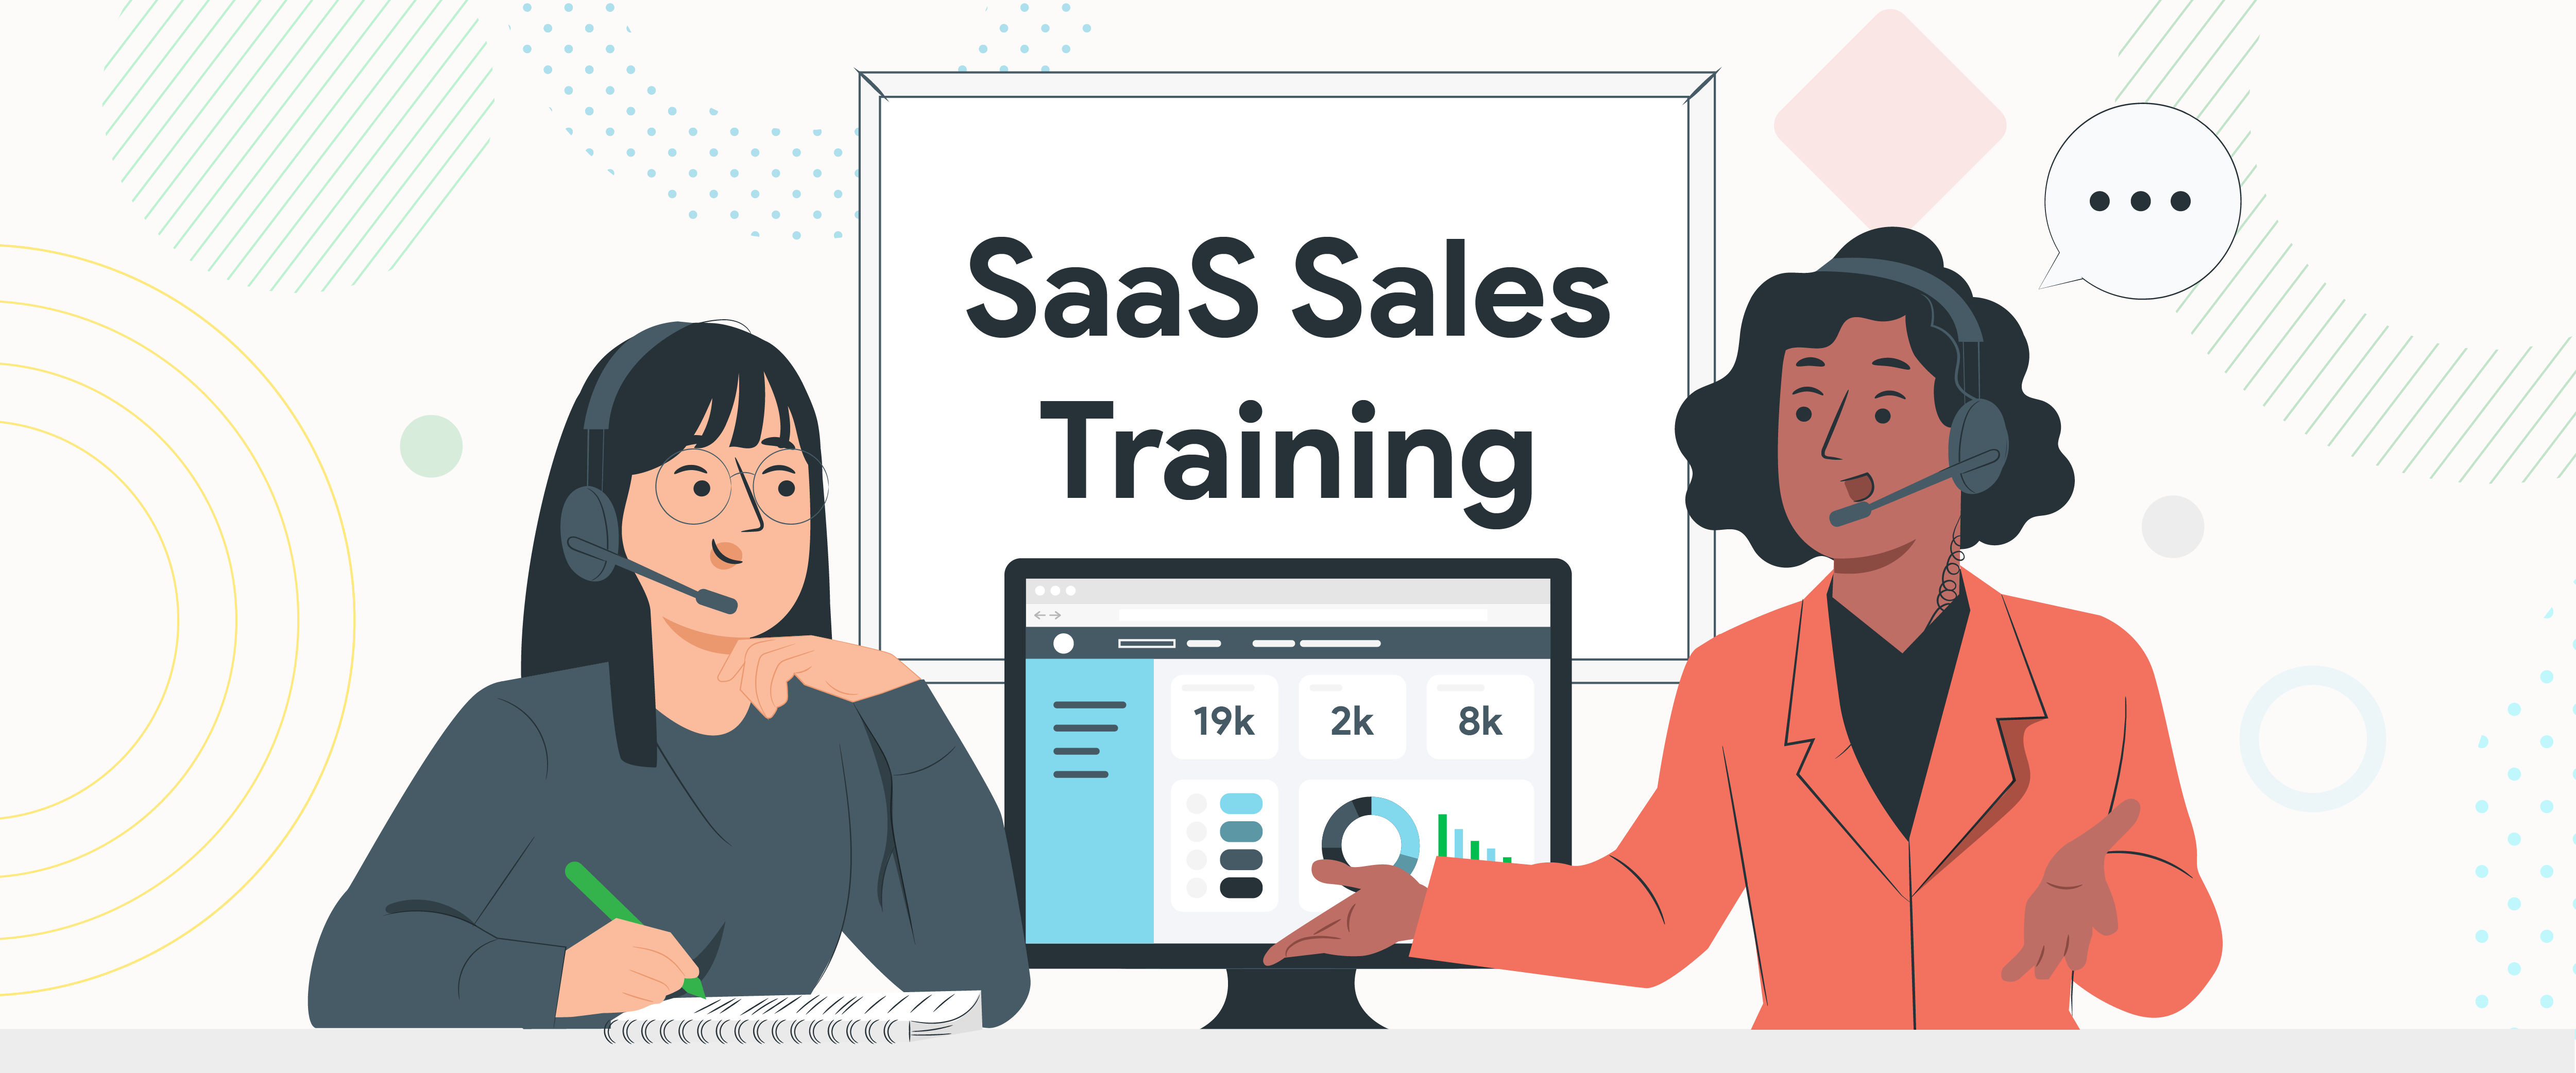 Saas Sales Training